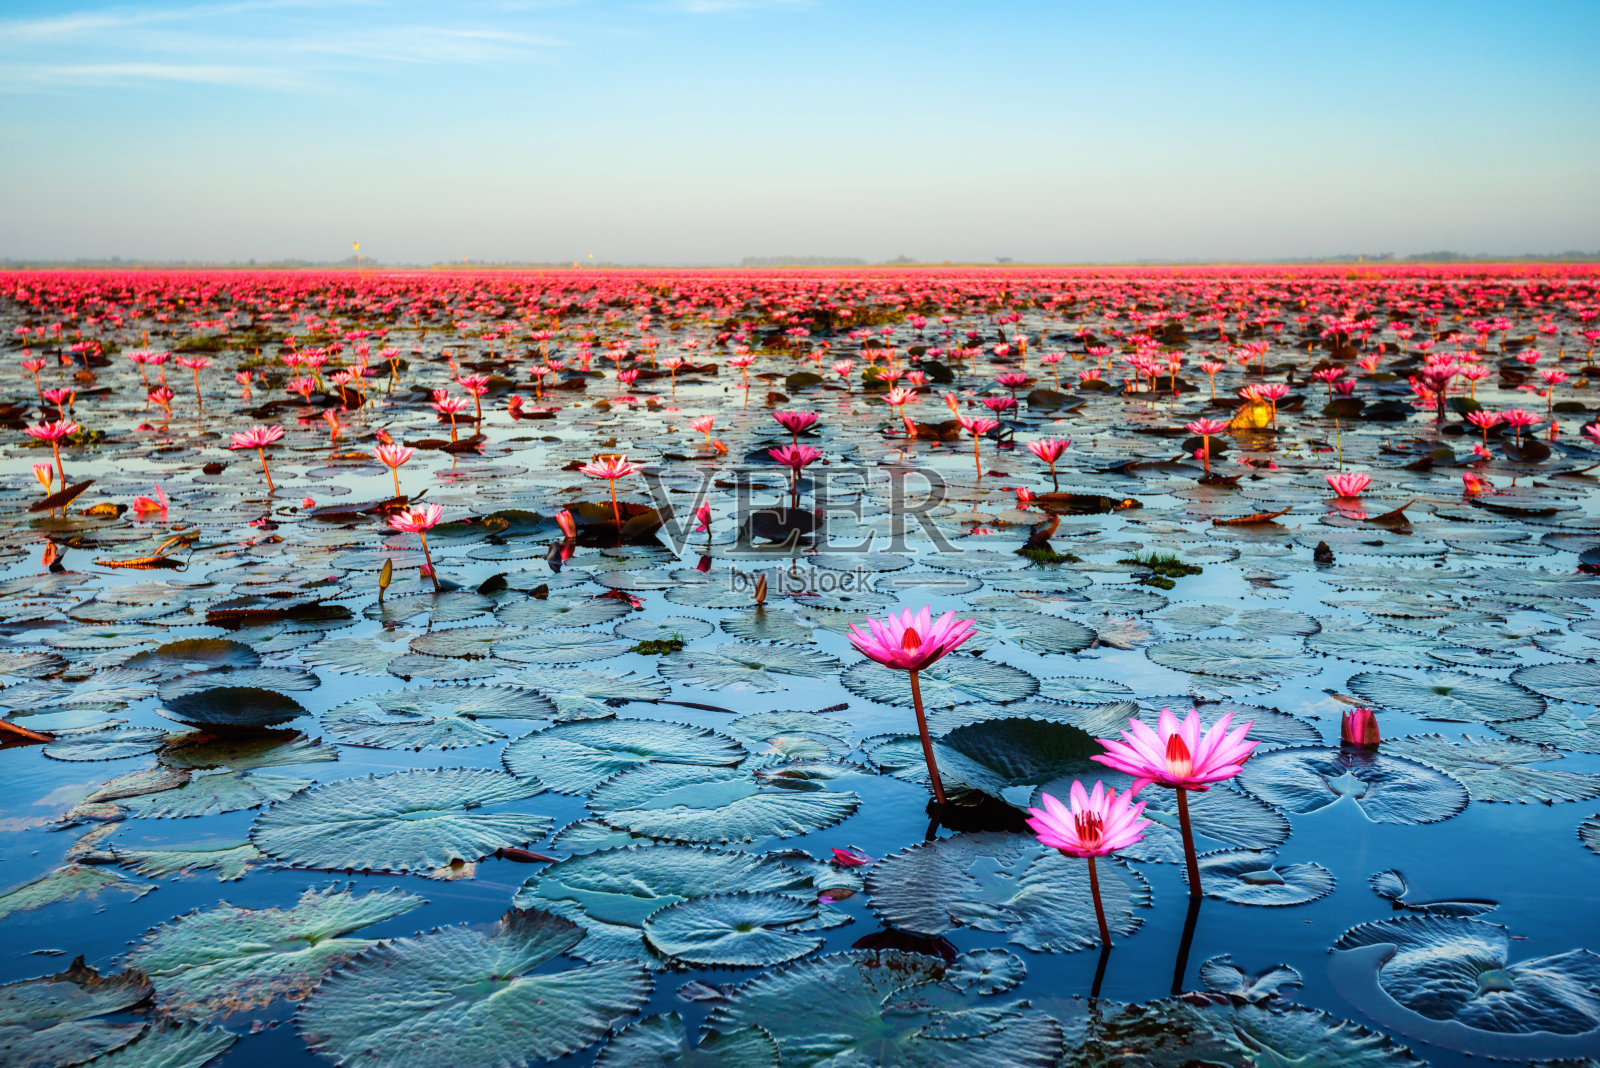 粉莲花之海(泰国未见)照片摄影图片